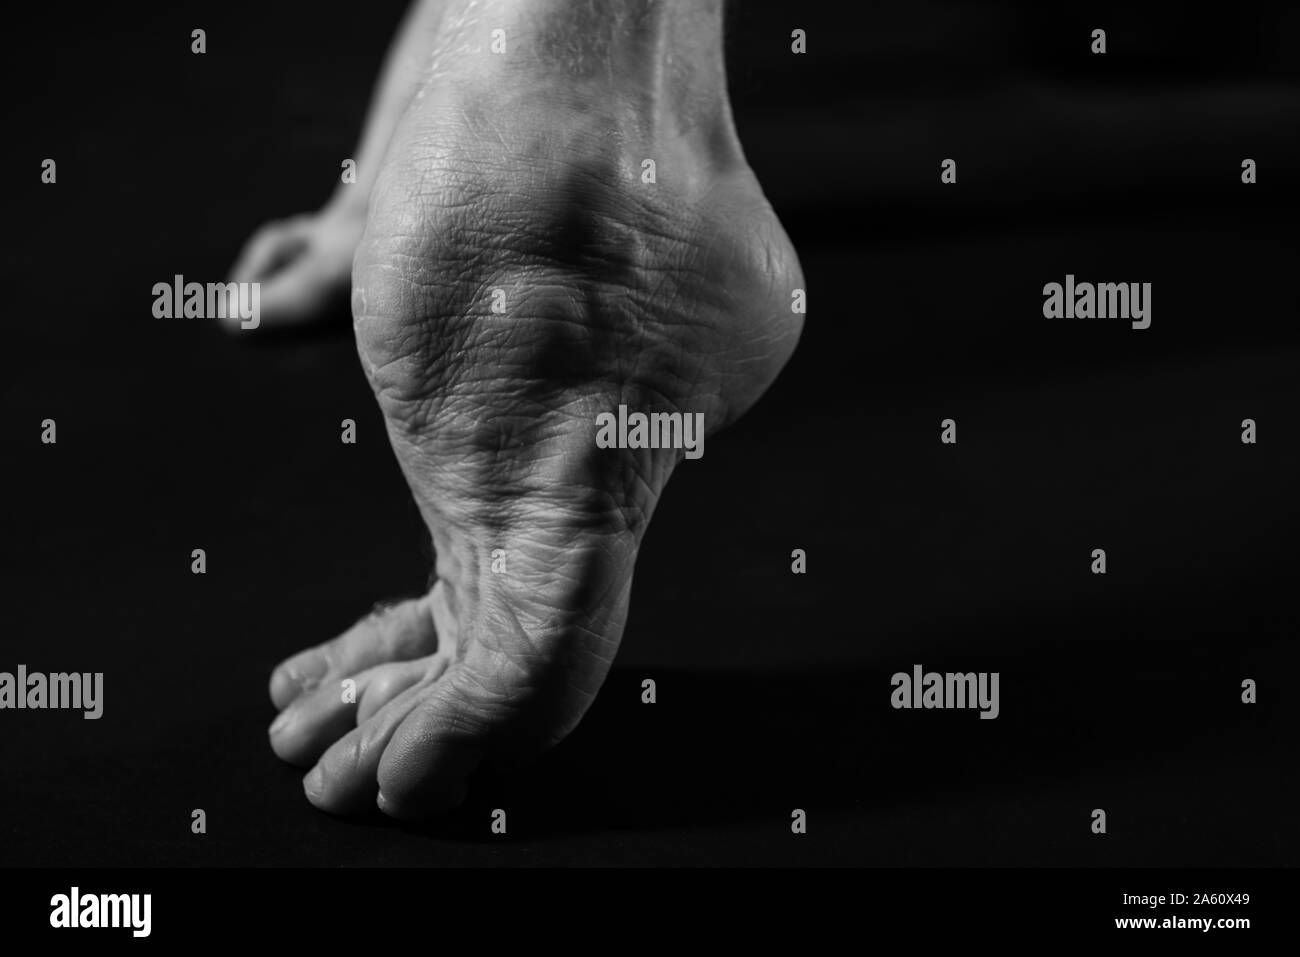 Studio Aufnahmen eines mans Fuß mit zerebraler Lähmung, der Welt zu zeigen, wie er in der Lage ist, sich zu bewegen die Arbeit als Model und Tänzerin trotz seiner Behinderung und. Stockfoto